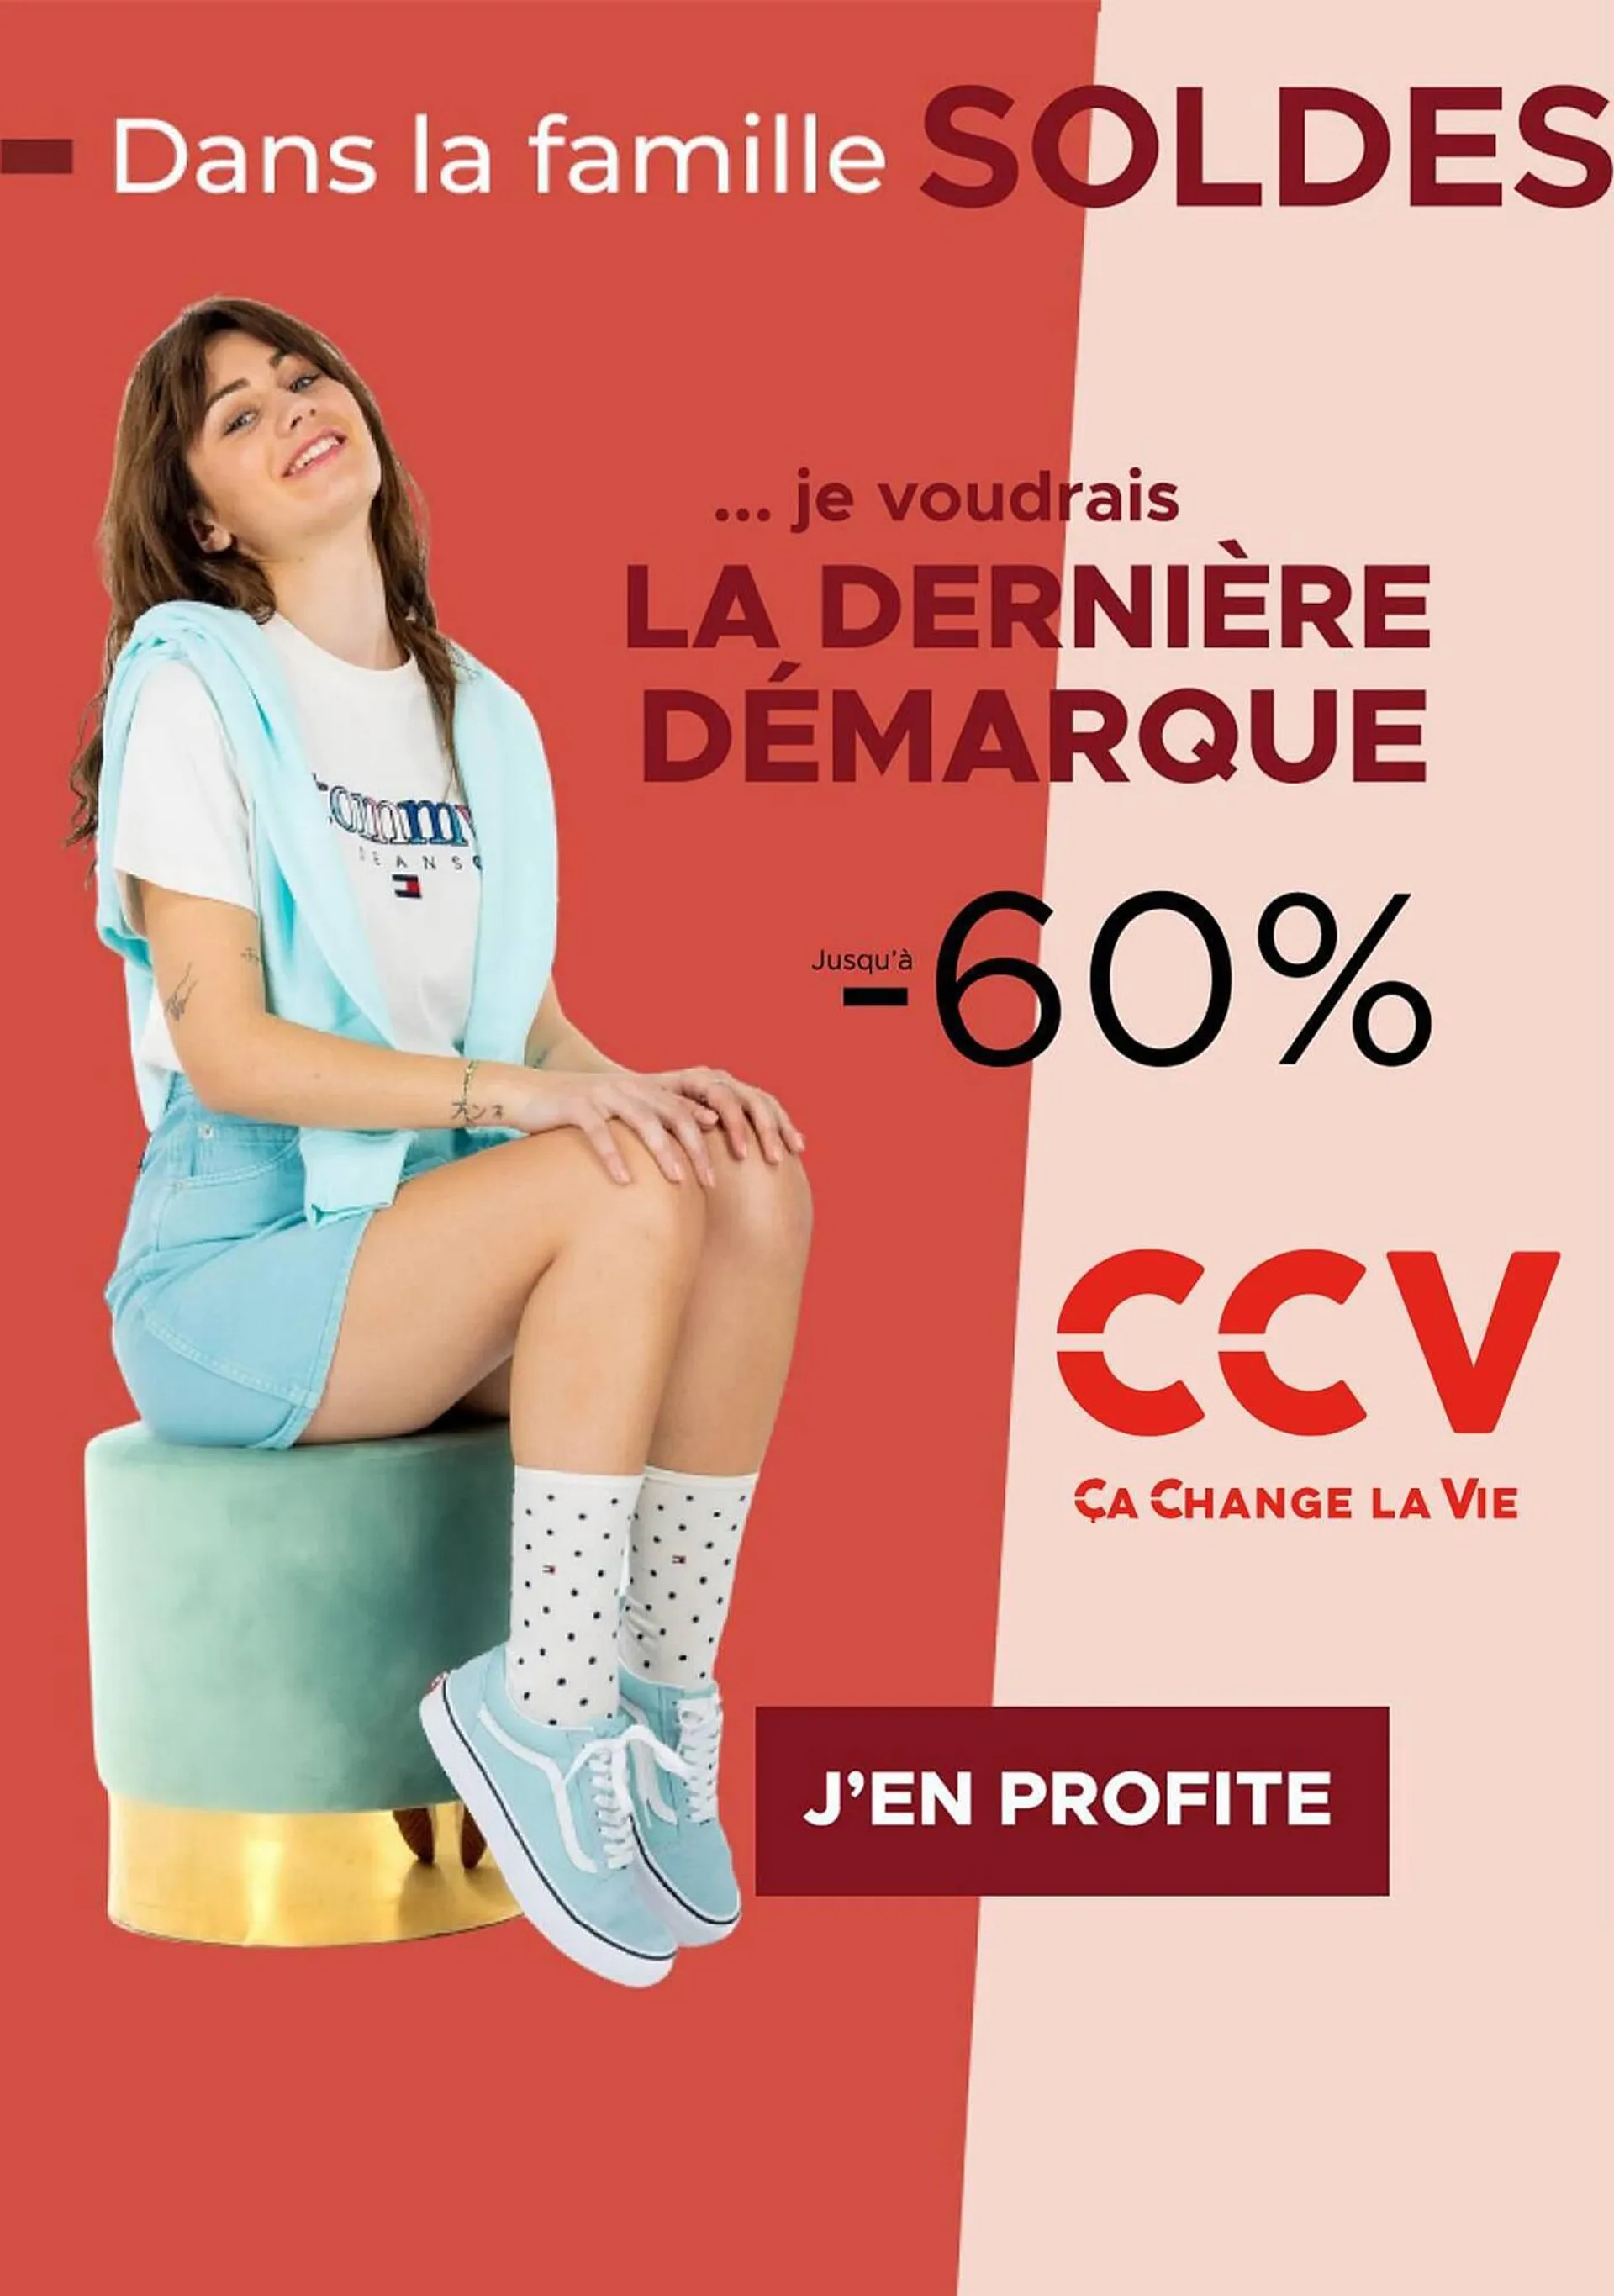 Catalogue CCV - 1